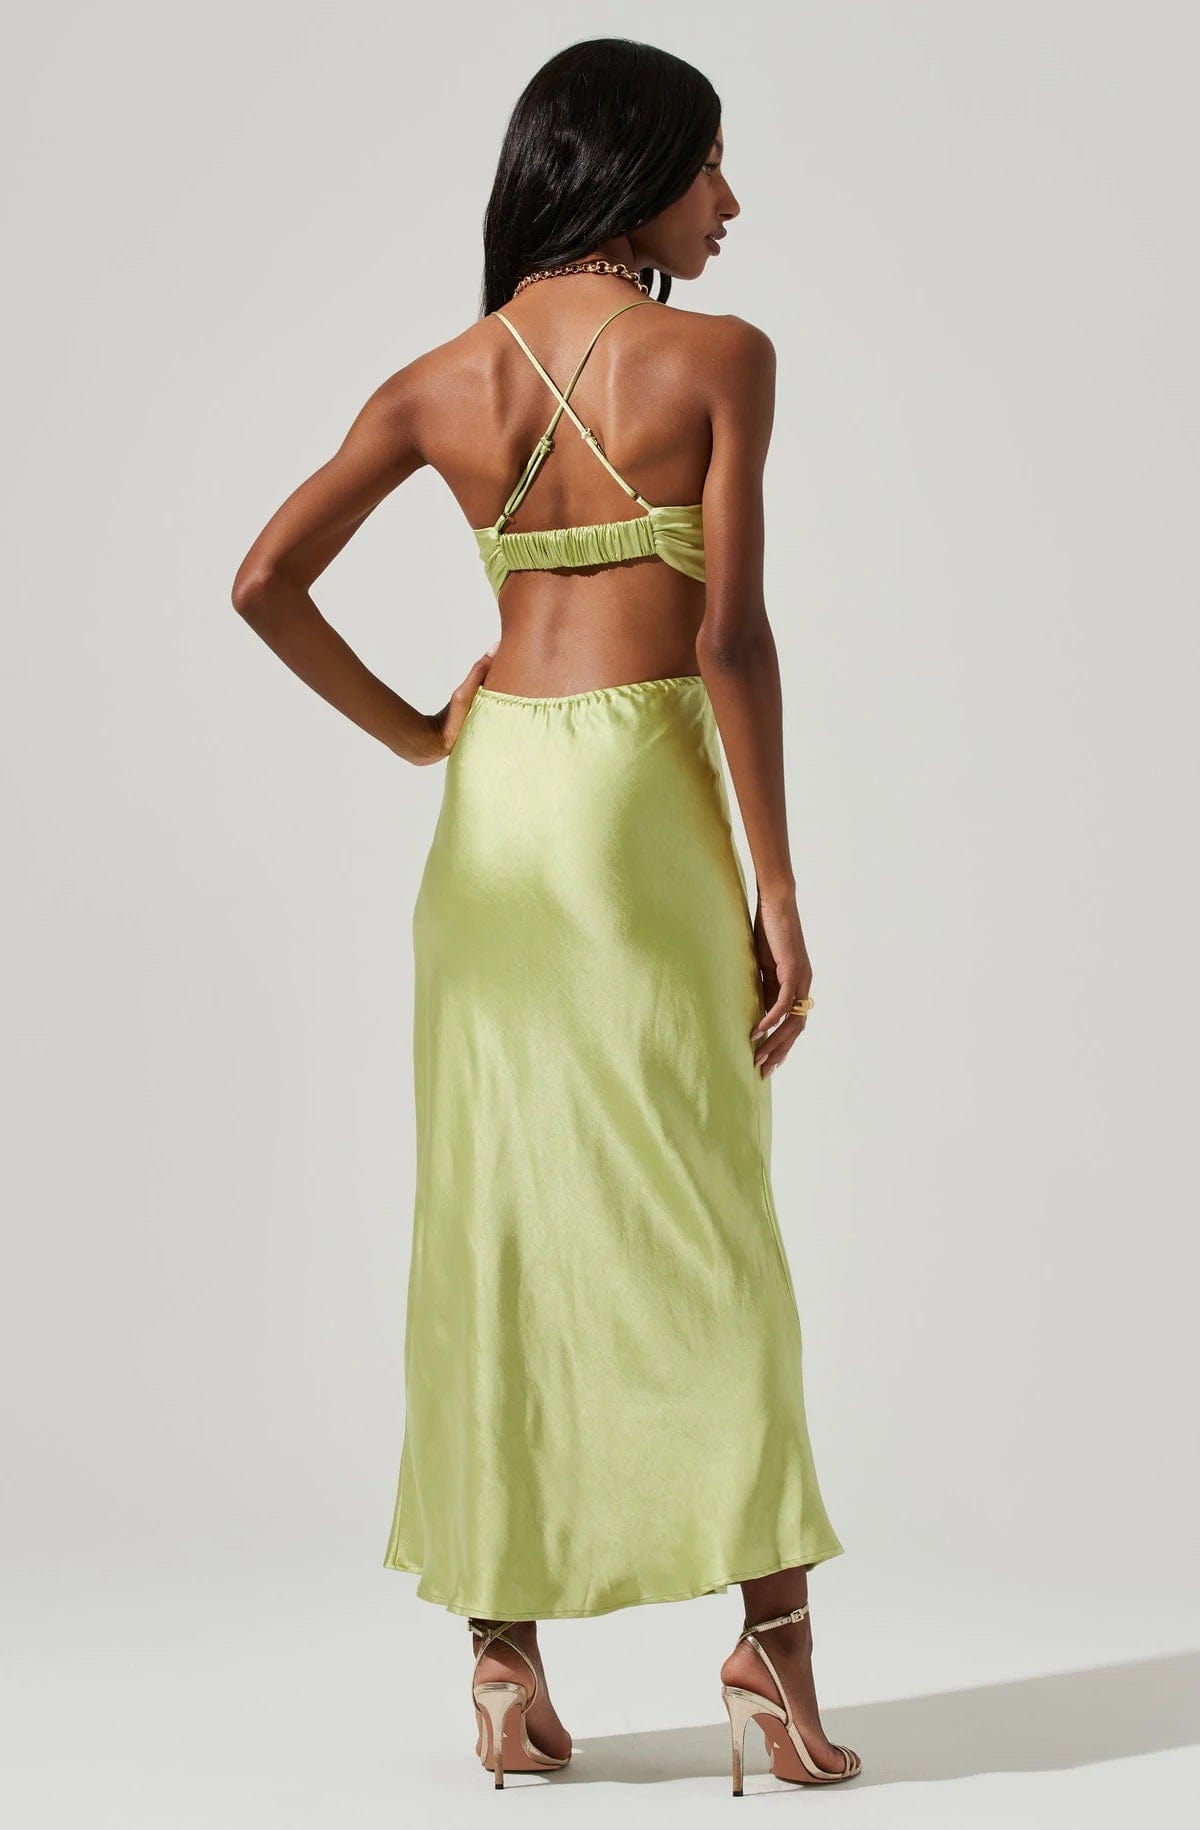 Colette Dress Lime, Dresses by ASTR | LIT Boutique